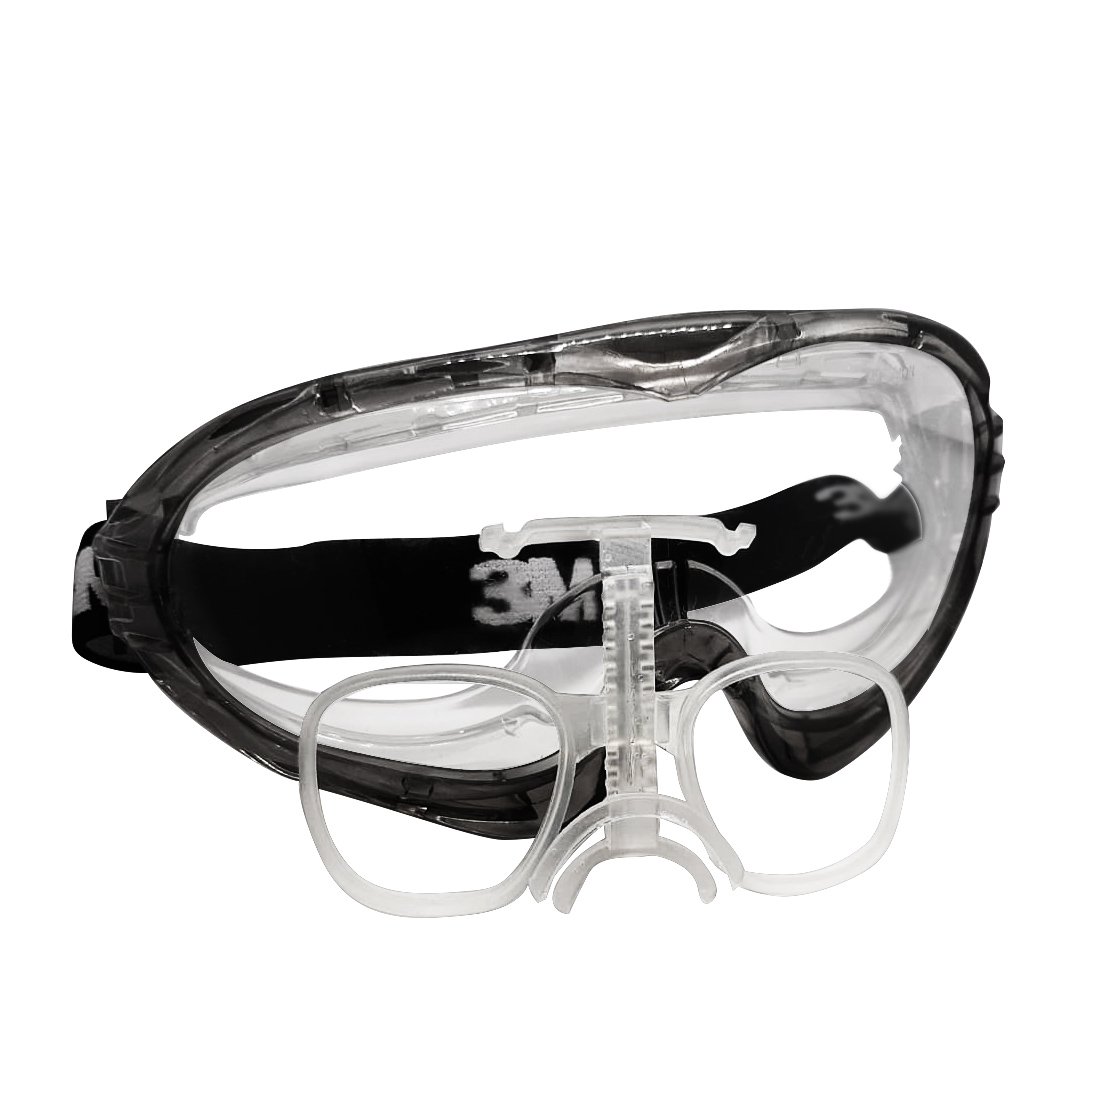 Soporte Para Gafas Oakley jawbreaker - Producto